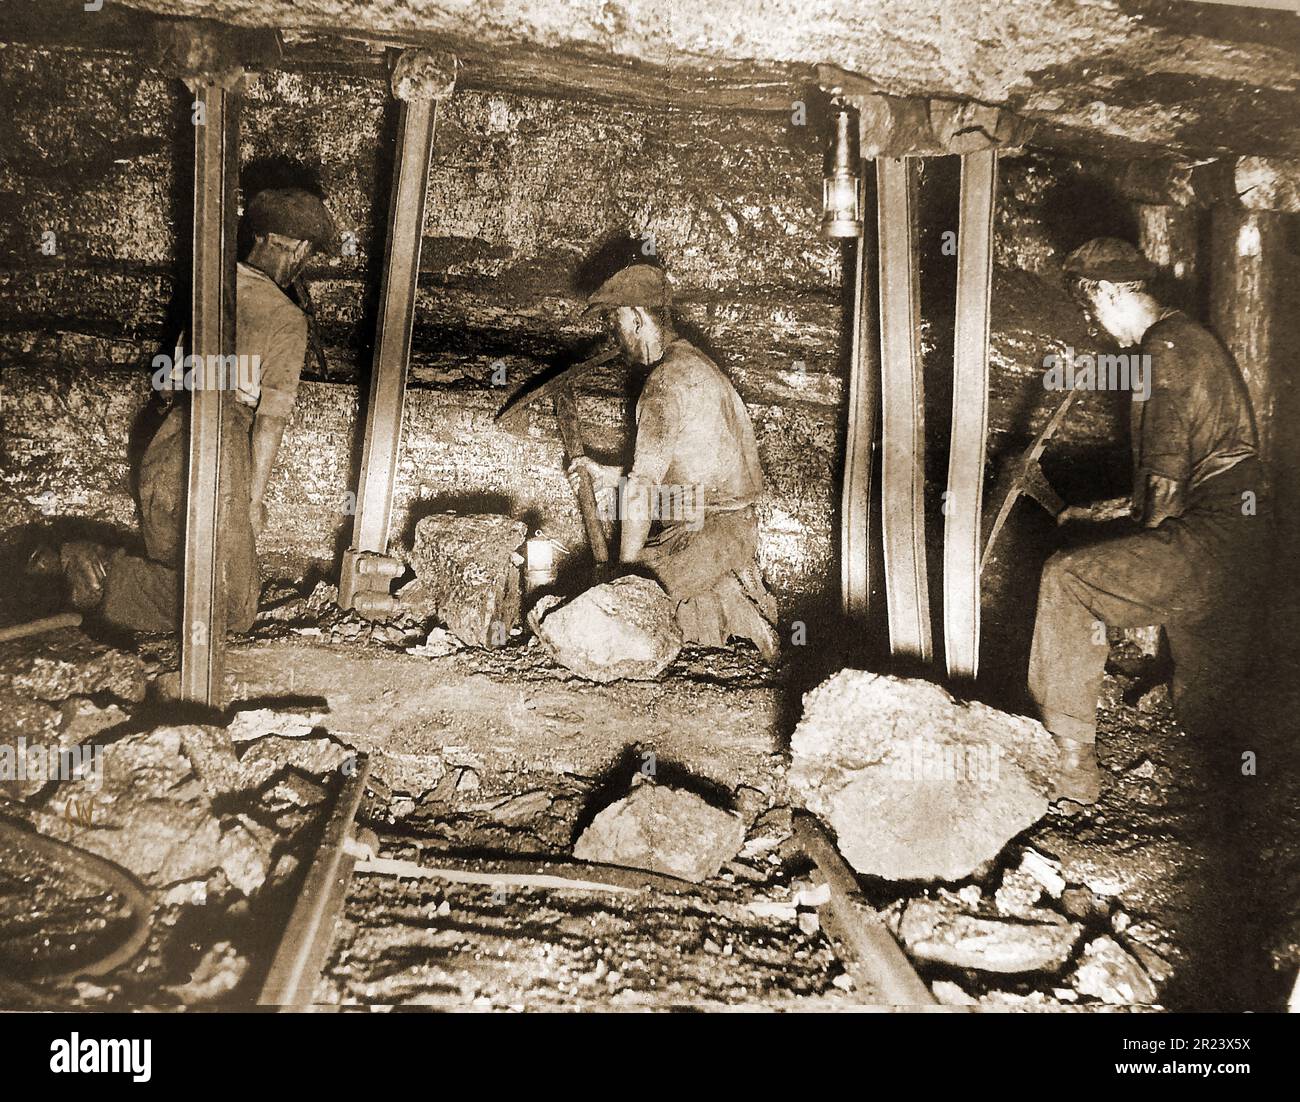 Pays de Galles en 1939 - Une scène typique dans une mine de charbon gallois avec des mineurs travaillant à la face de charbon. Banque D'Images